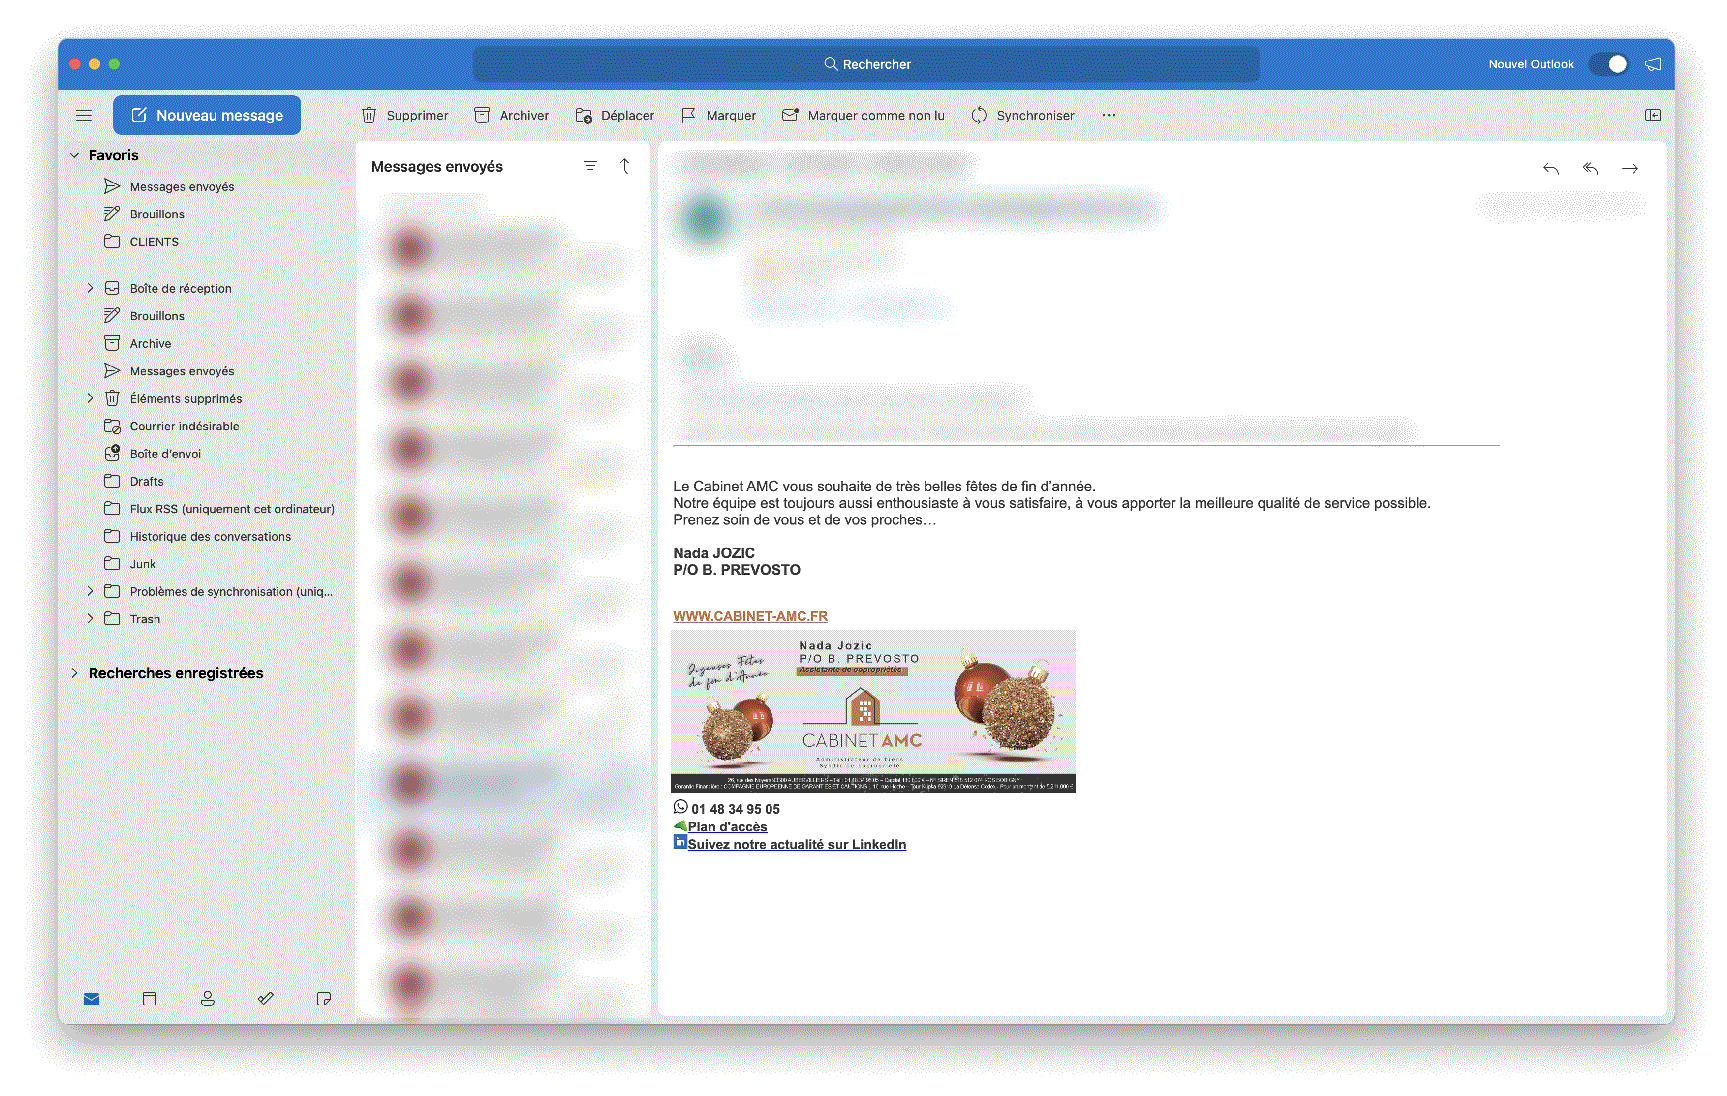 fenetre-outlook-mail-html-professionnelle-vanille-fraise-marketing-et-communication-agence-cabinet-AMC -fichier réduit